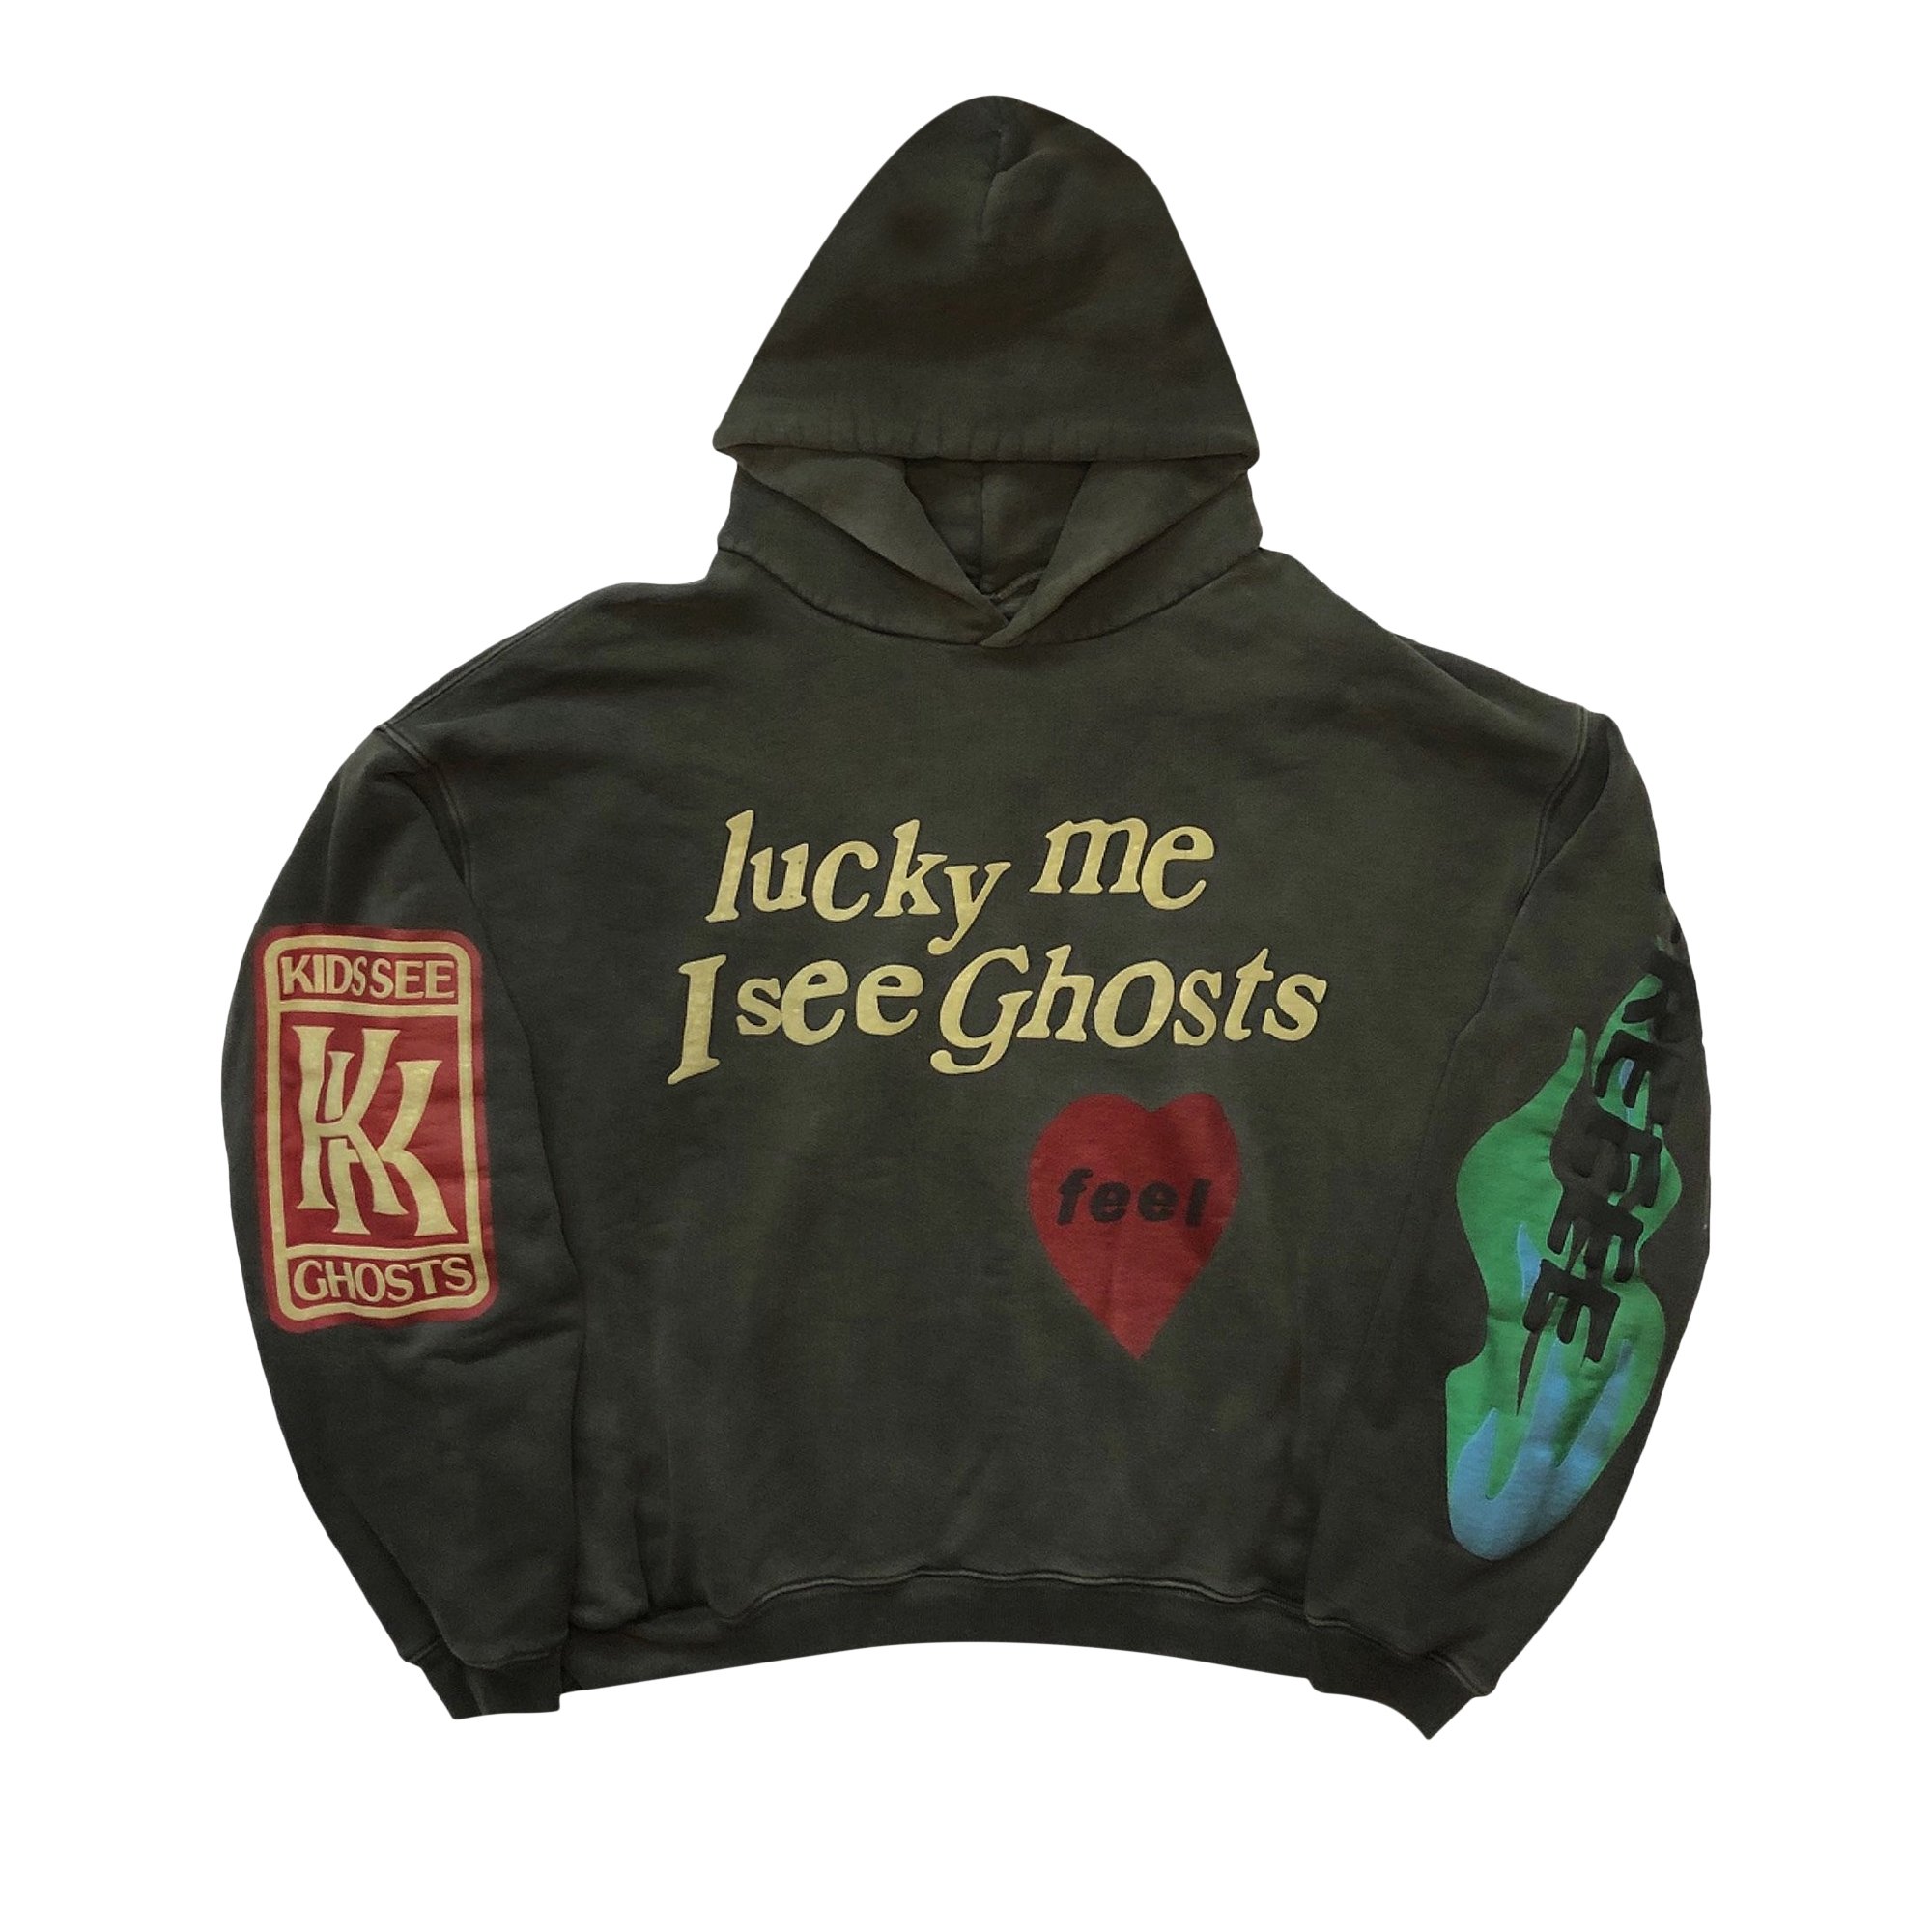 Cpfm kids see ghost hoodie S